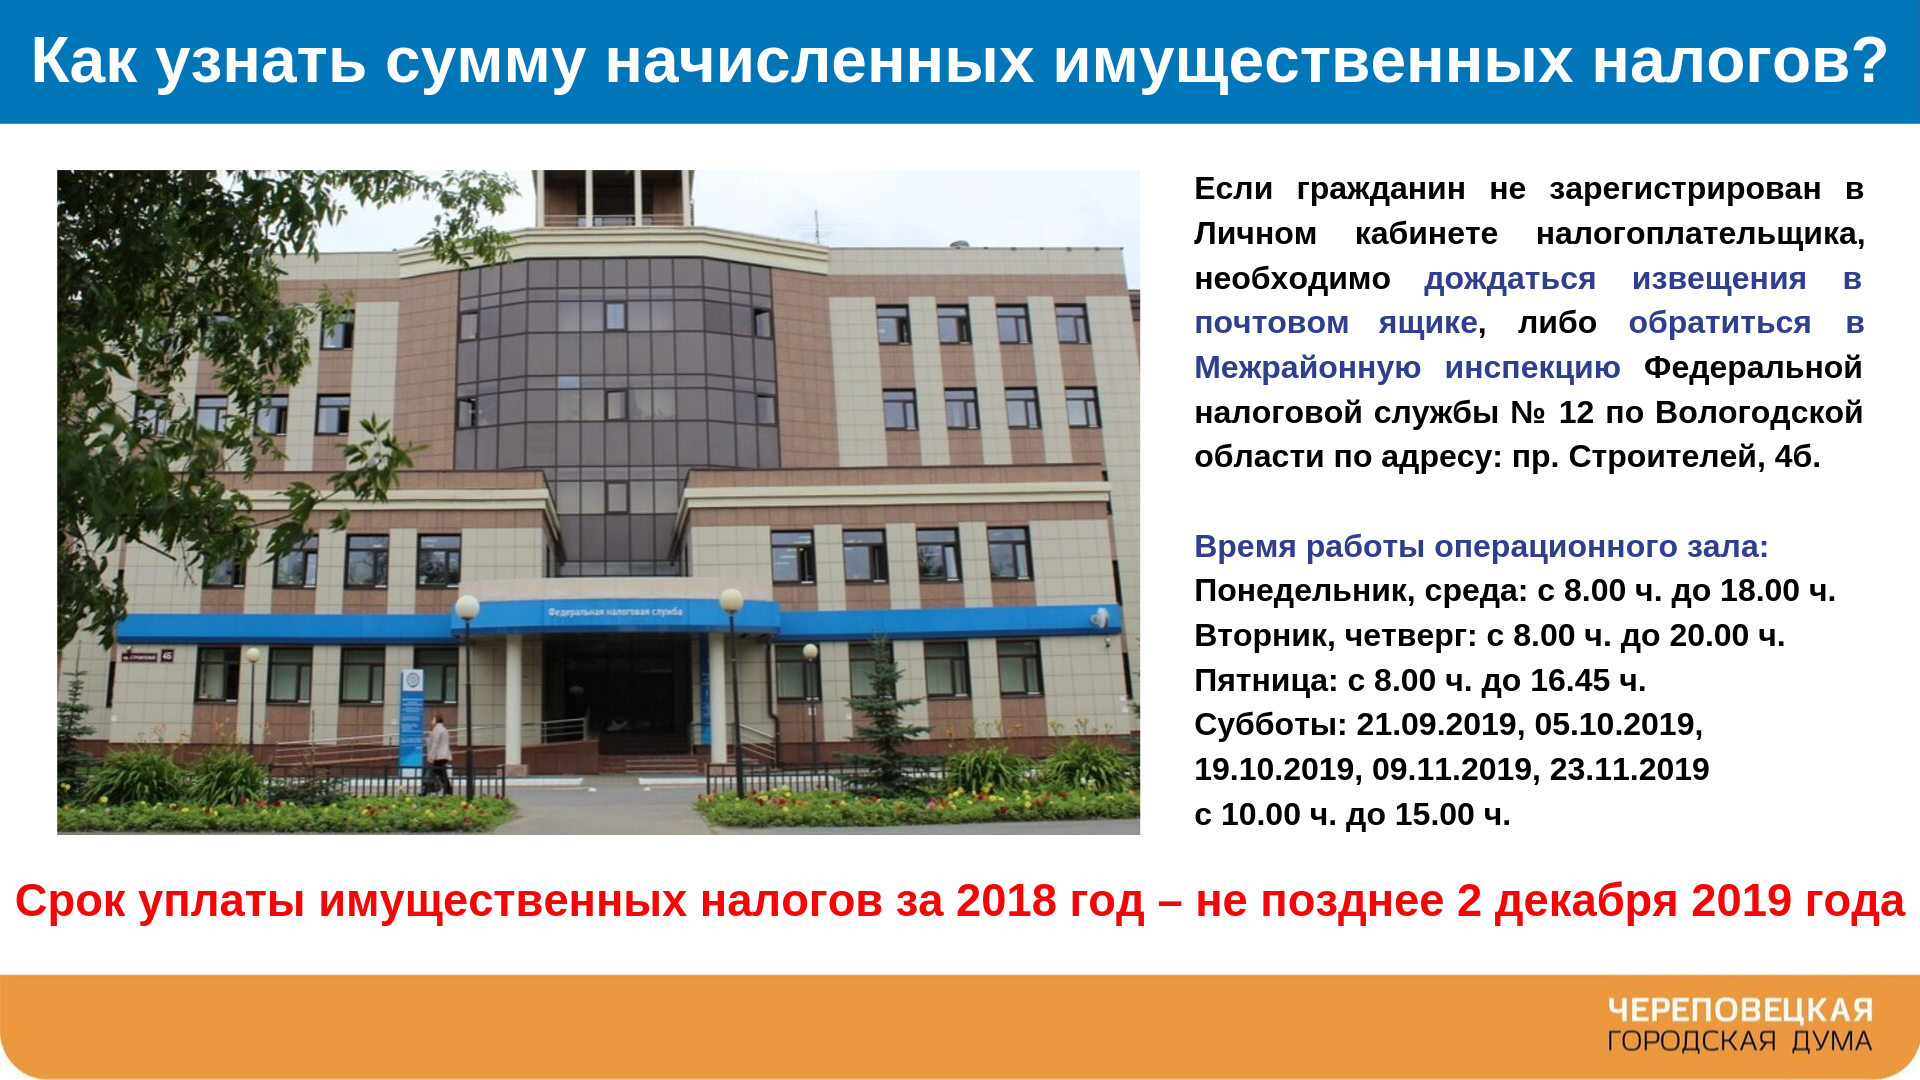 Здание НИУИФ В Череповце. Фотографии относящиеся налогам уз. Какие школы относятся к адресу екатеринбург